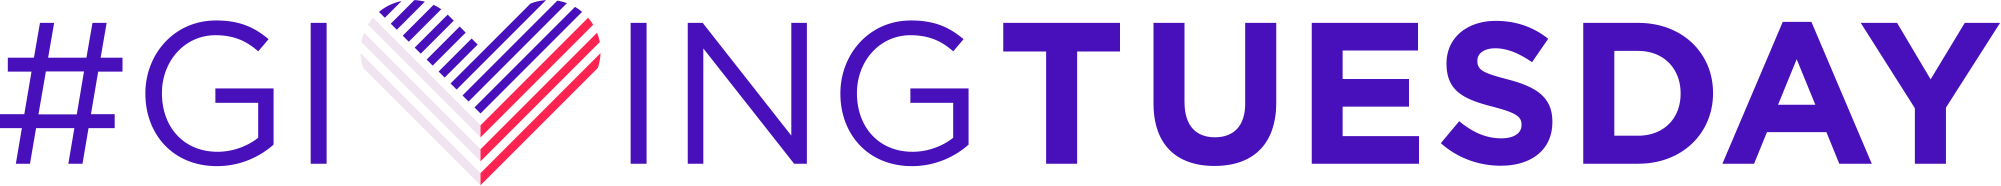 Giving Tuesday_logo